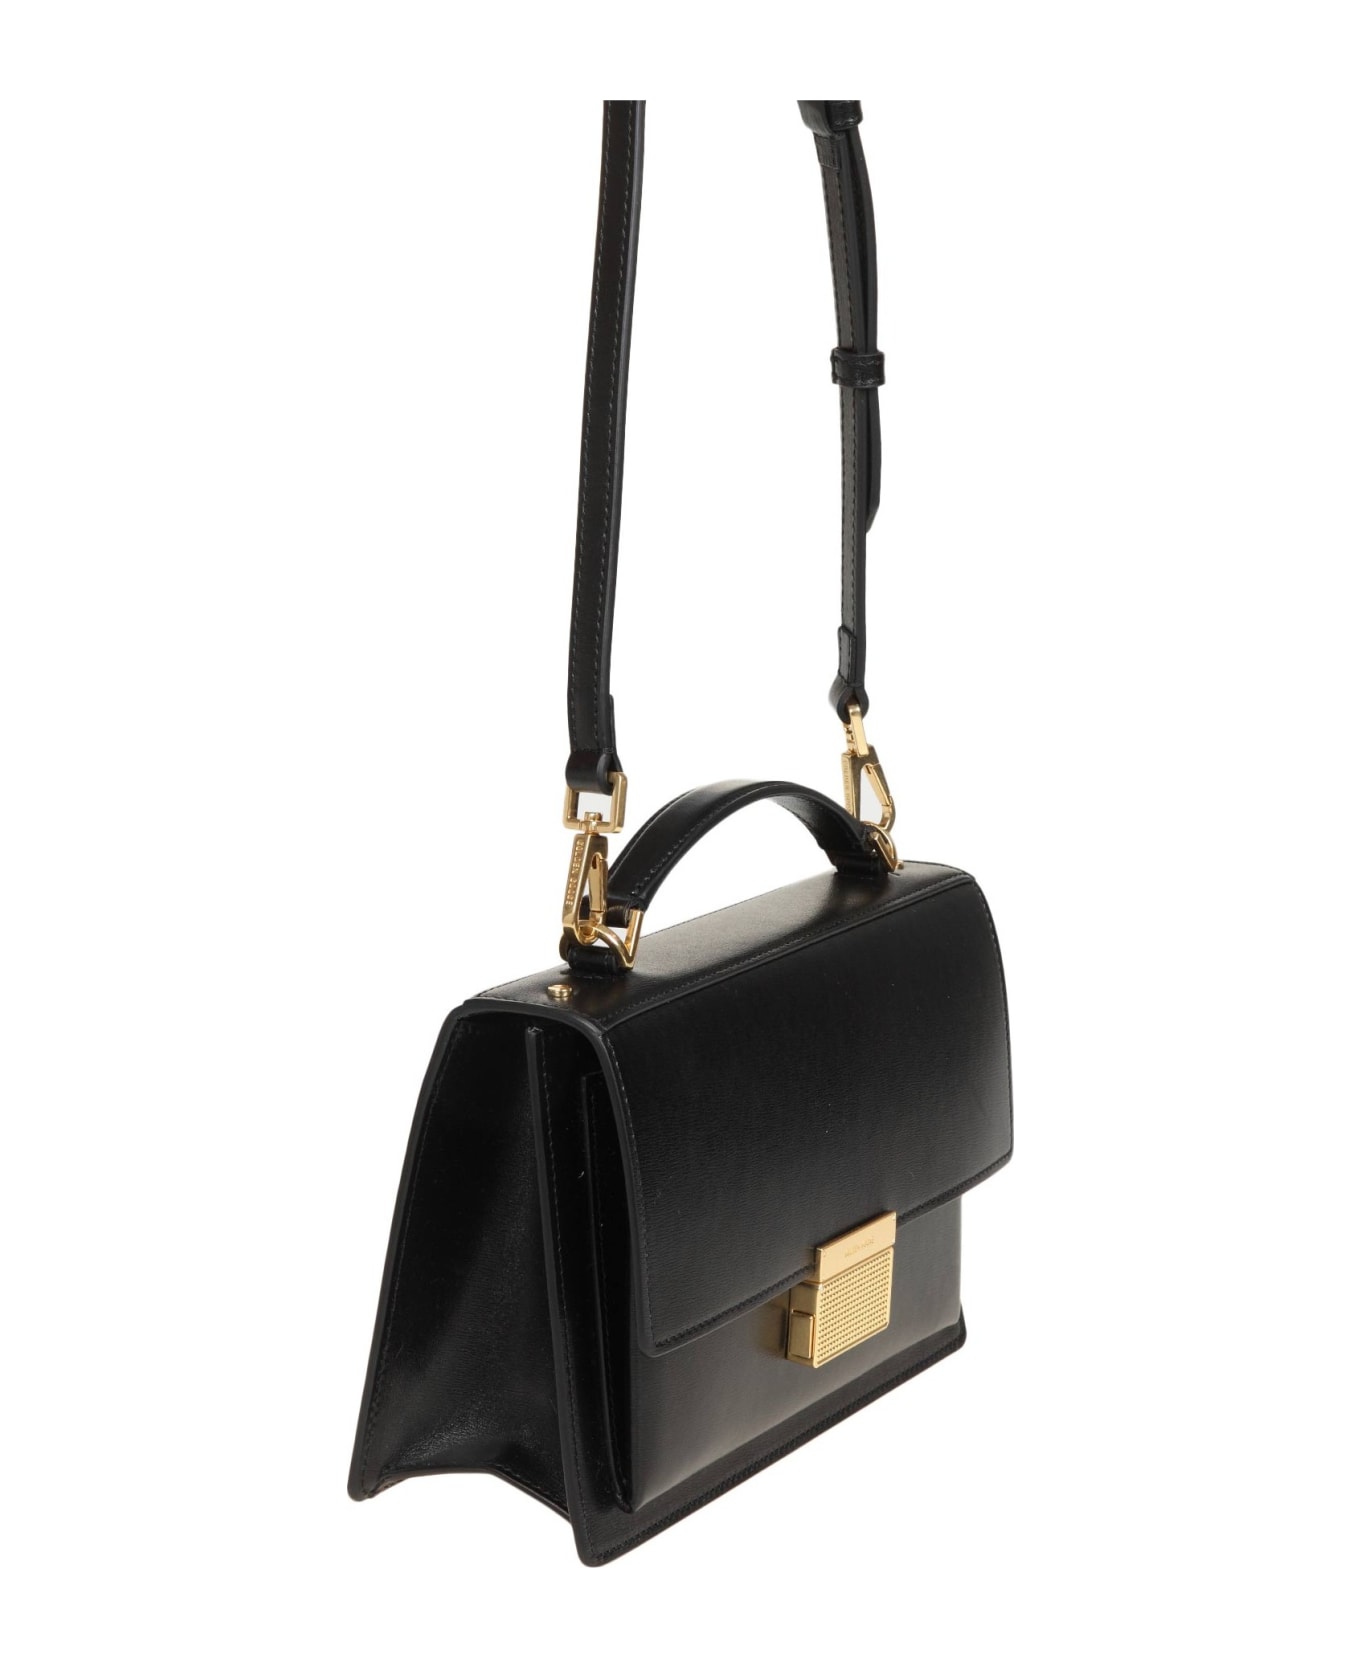 Golden Goose Venezia Handbag In Black Leather - Black